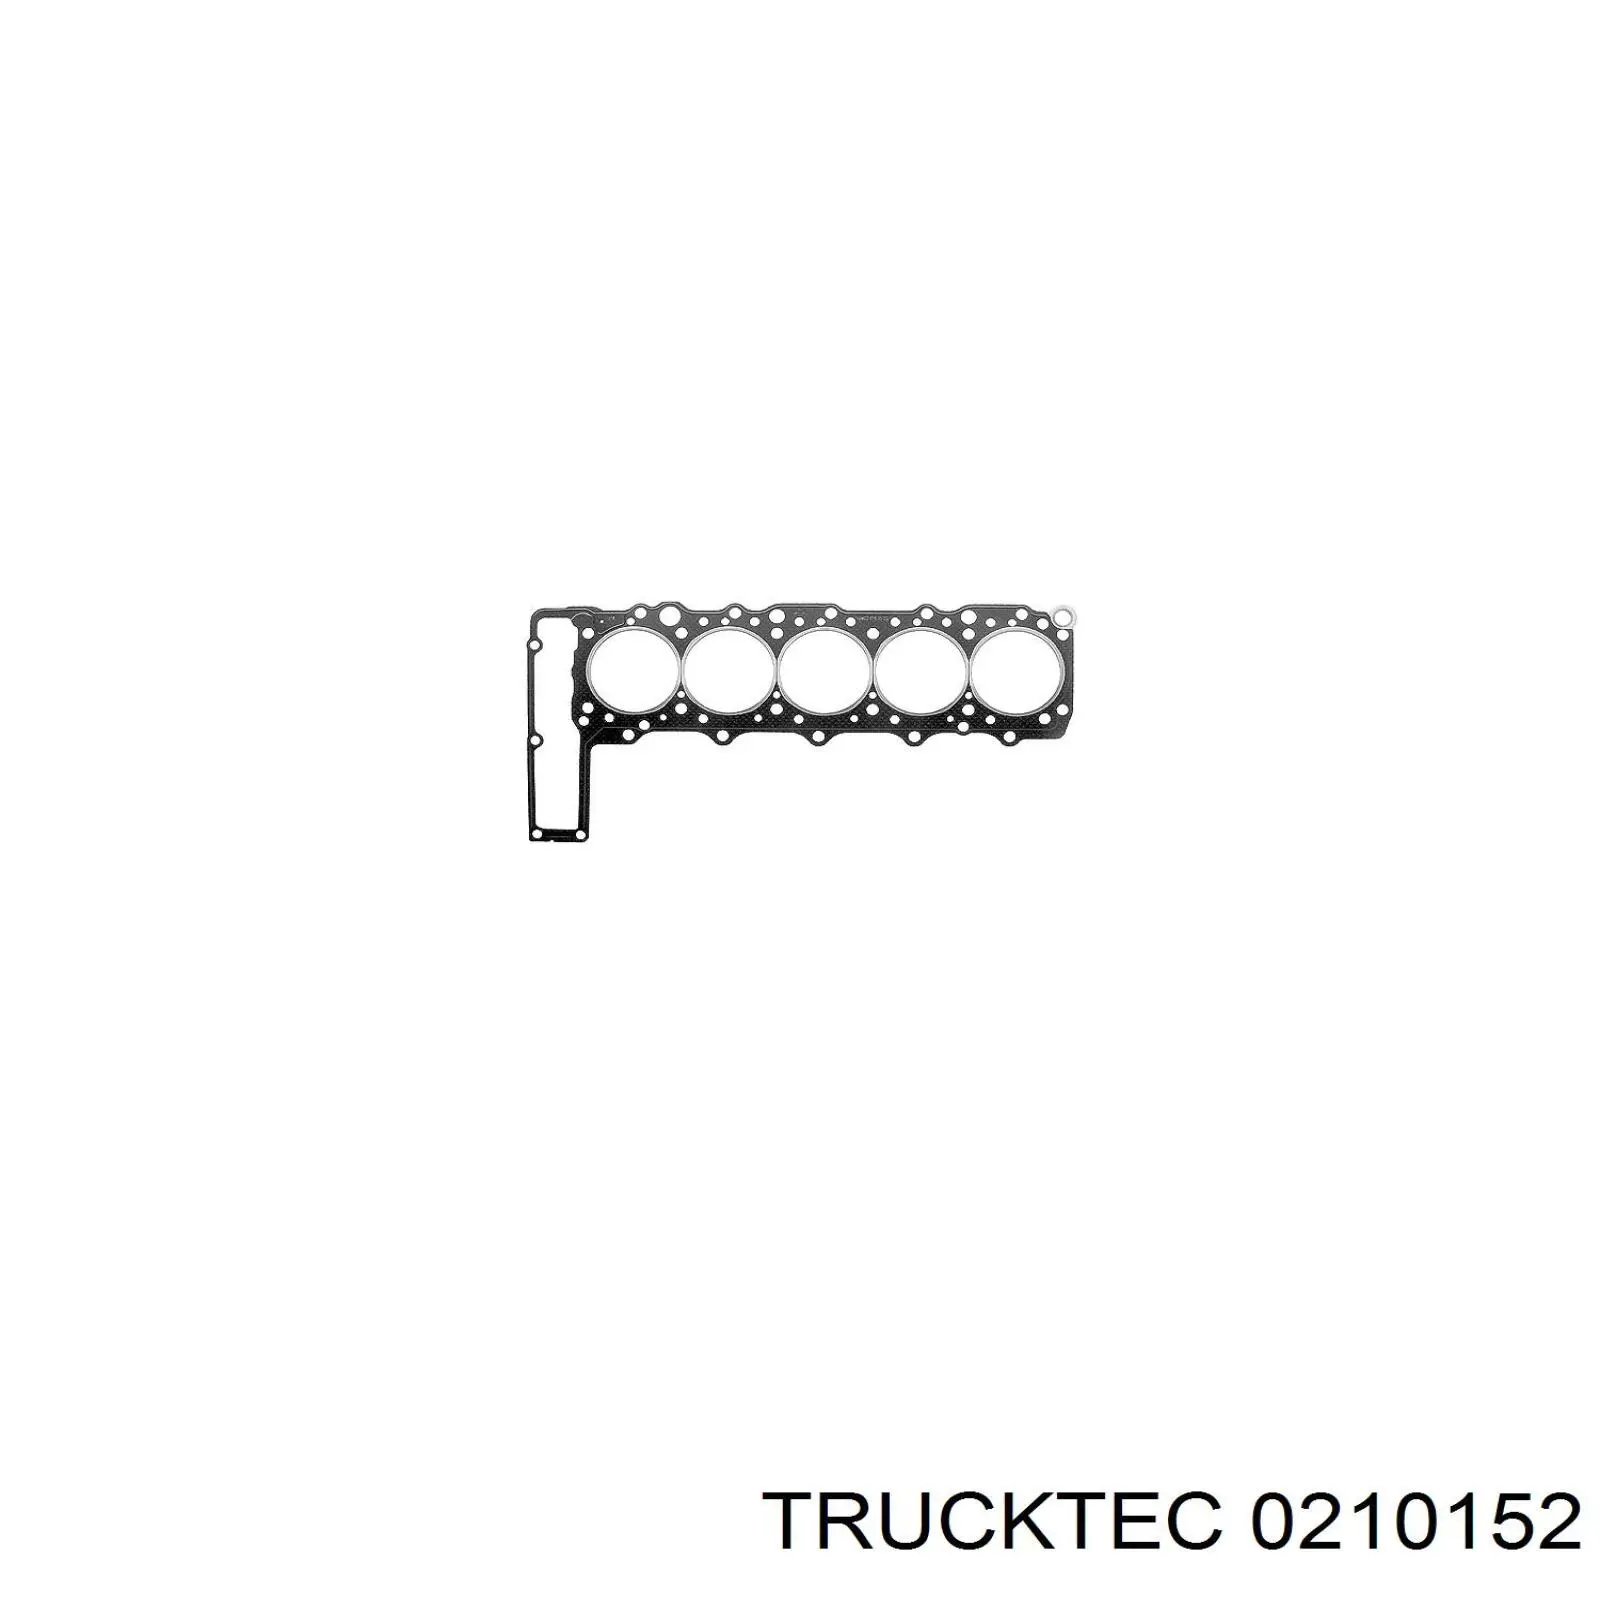 02.10.152 Trucktec junta de culata